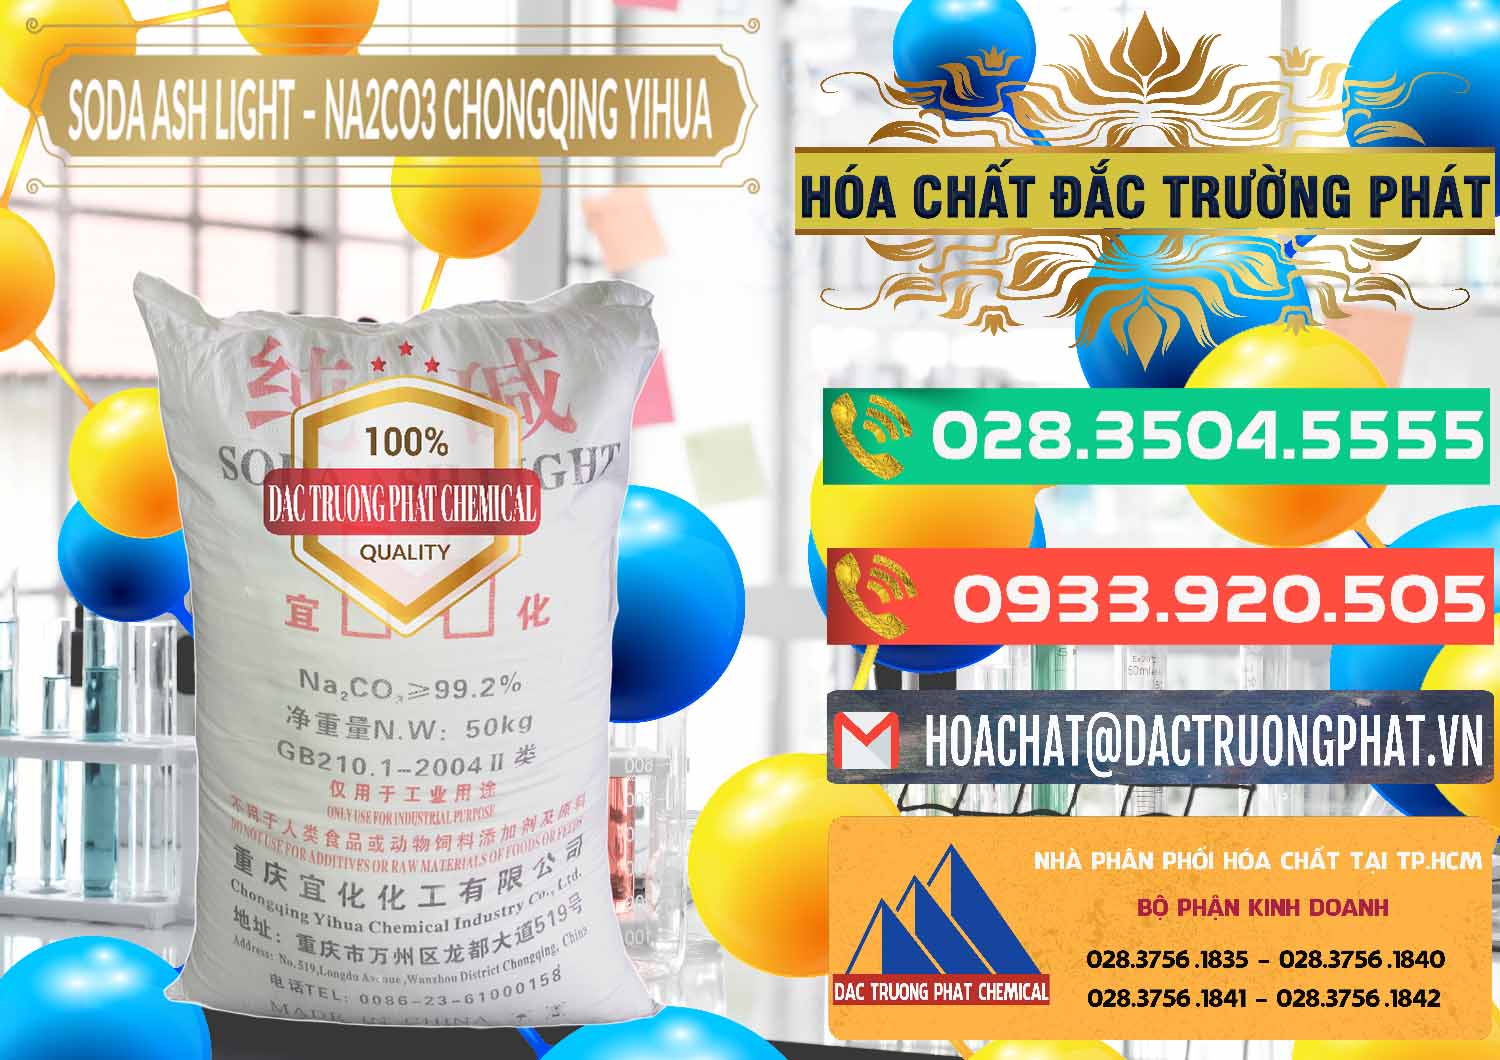 Cty kinh doanh _ bán Soda Ash Light - NA2CO3 Chongqing Yihua Trung Quốc China - 0129 - Công ty chuyên kinh doanh và cung cấp hóa chất tại TP.HCM - congtyhoachat.com.vn